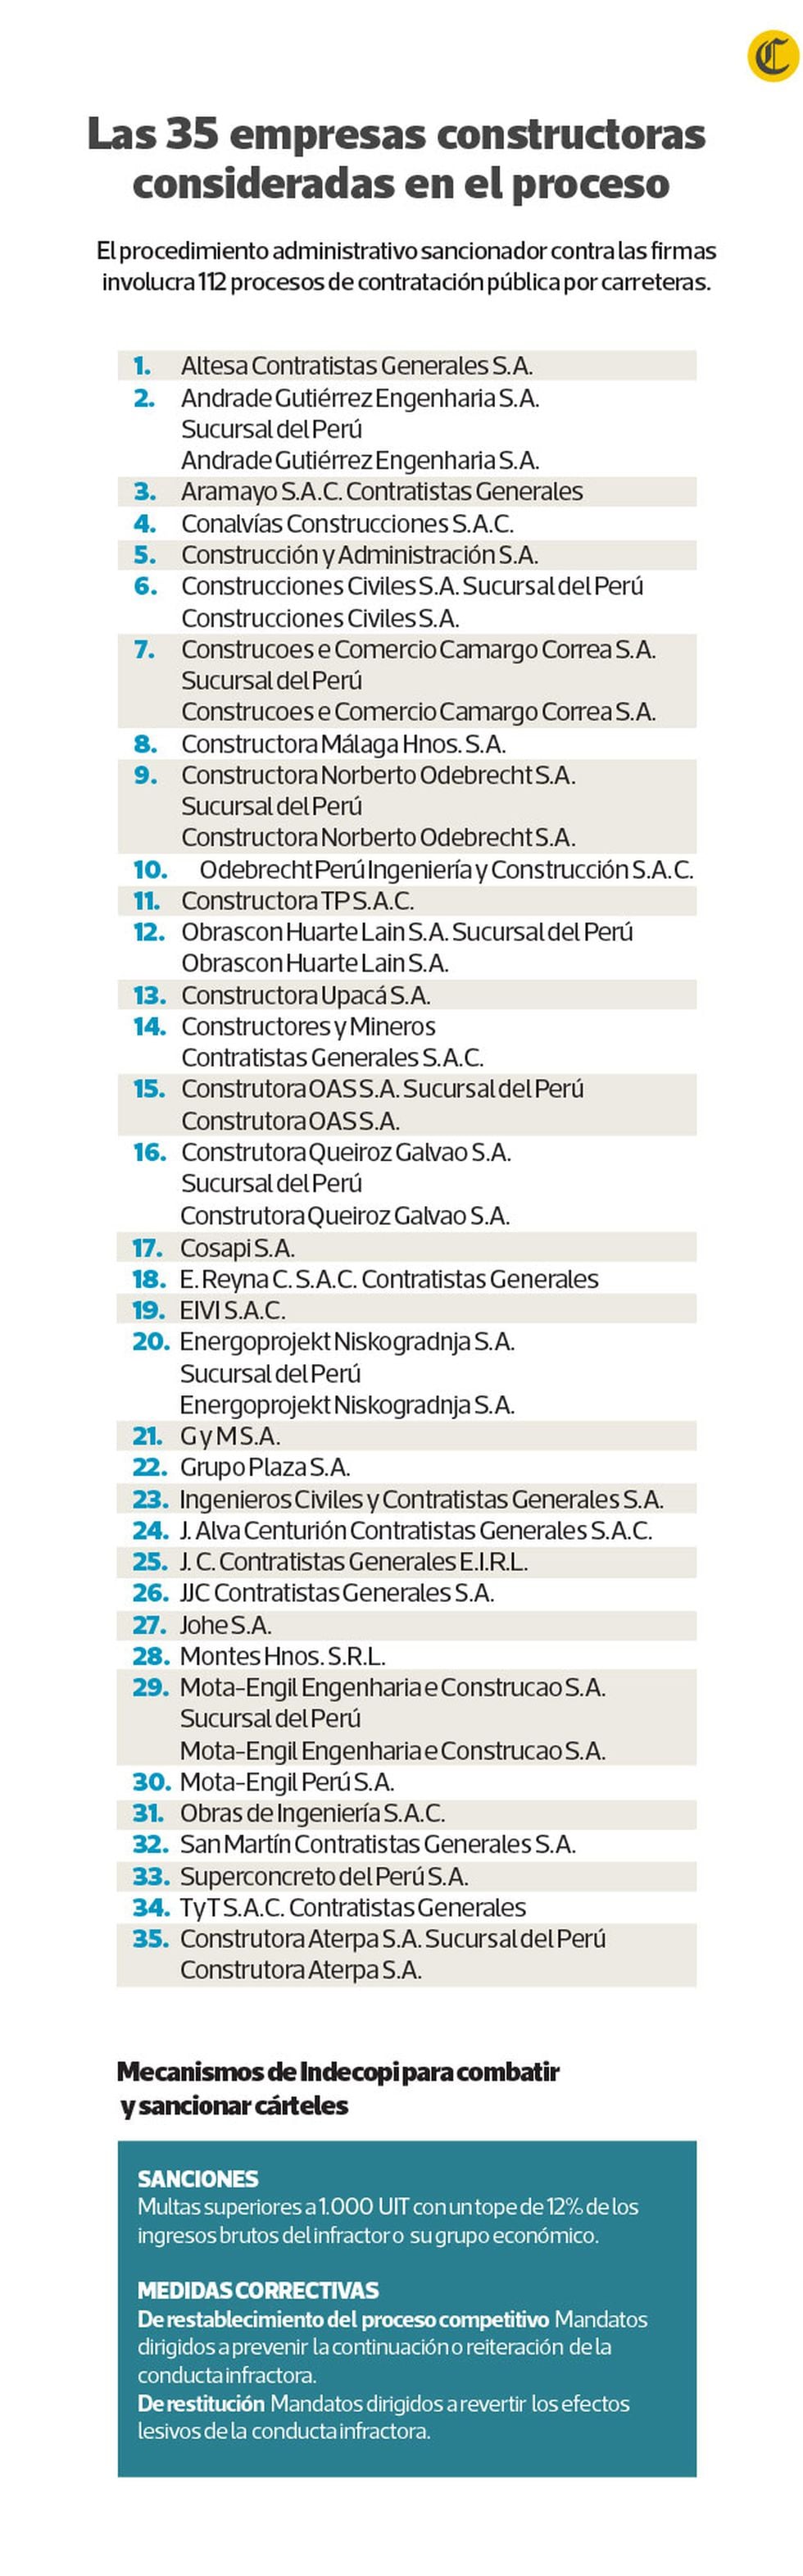 Las 35 empresas constructoras consideradas en el proceso. (Gráfico: Enrique Gallo Acosta / El Comercio)